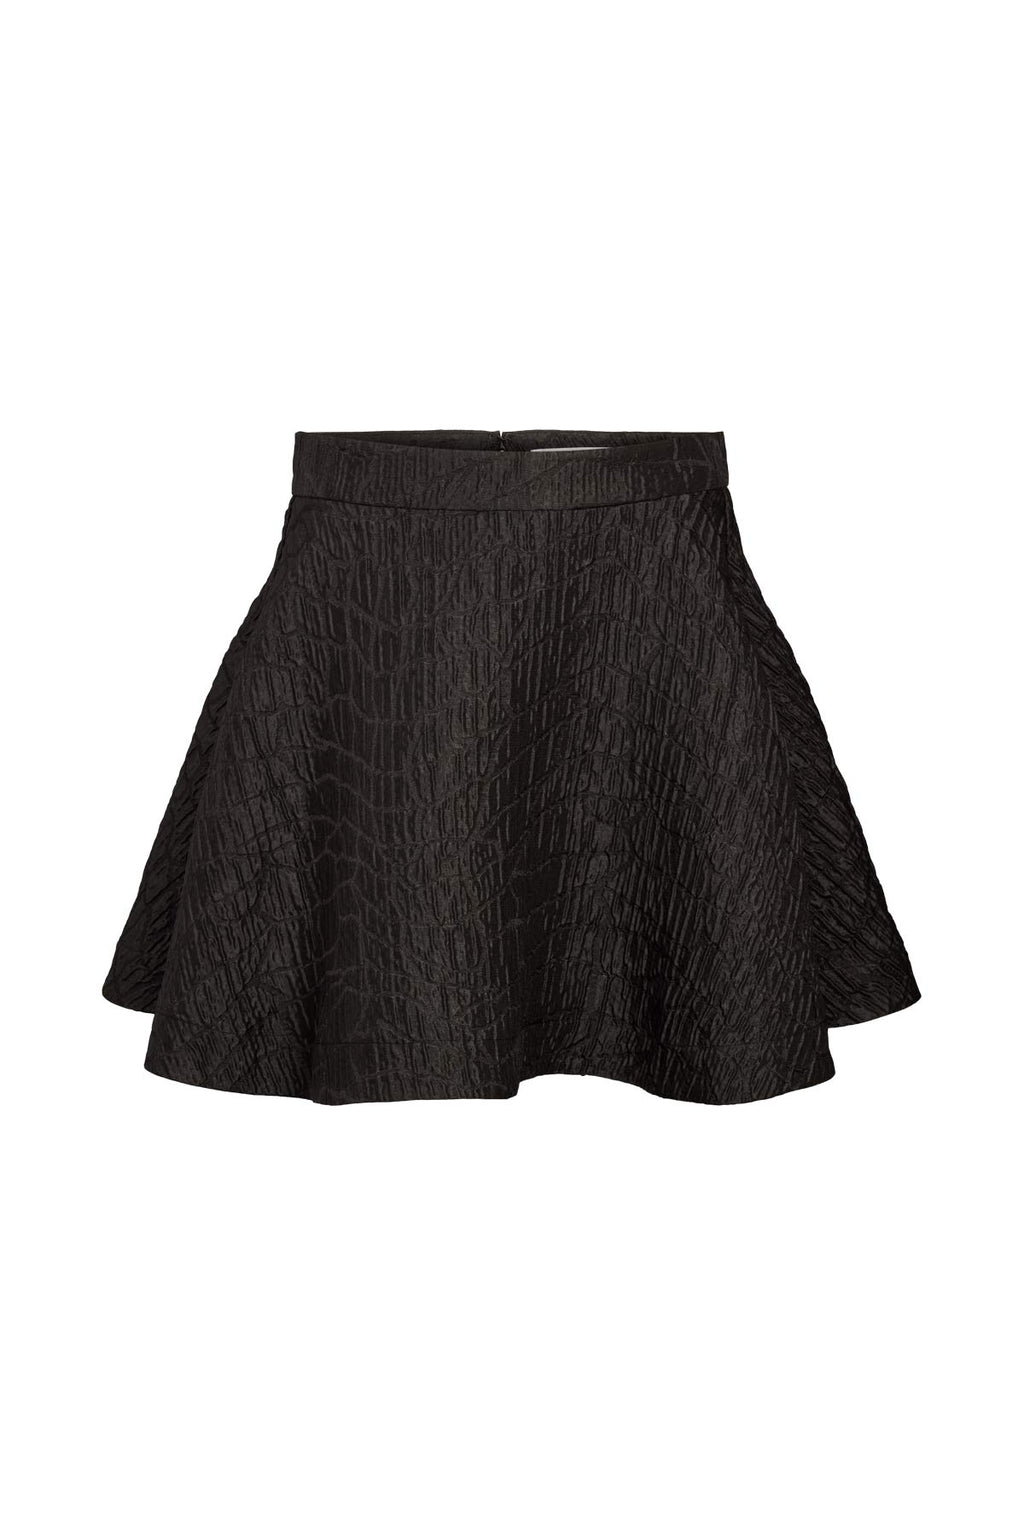 Contrast color inner gloss Phyllis short tulle skirt black - Shop  yupengshih Skirts - Pinkoi